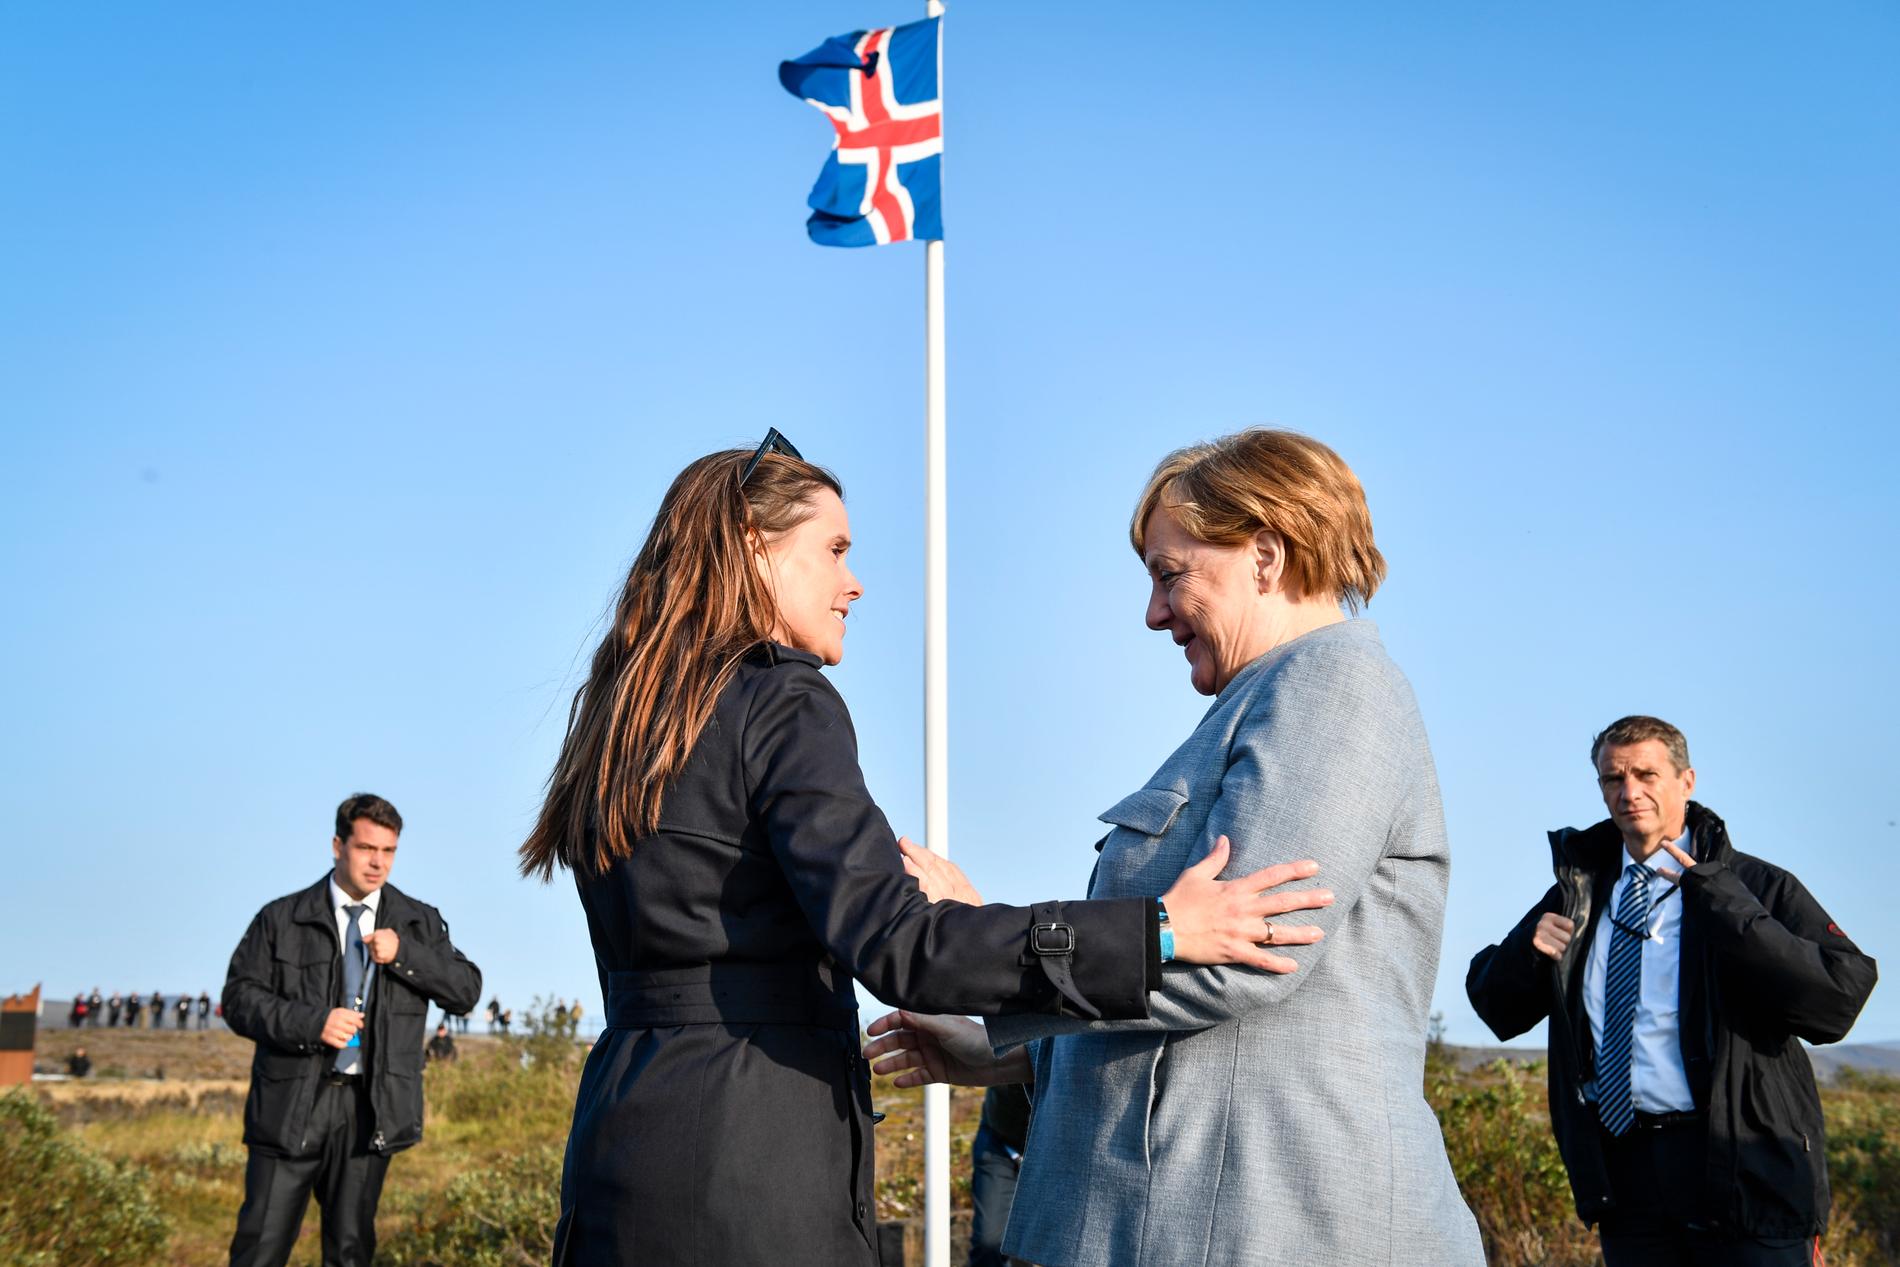 Islands statsminister Katrín Jakobsdottír tar emot Tysklands förbundskansler Angela Merkel vid sommarresidenset i Thingvellir nationalpark, inför de nordiska statsministrarnas årliga inofficiella sommarmöte.